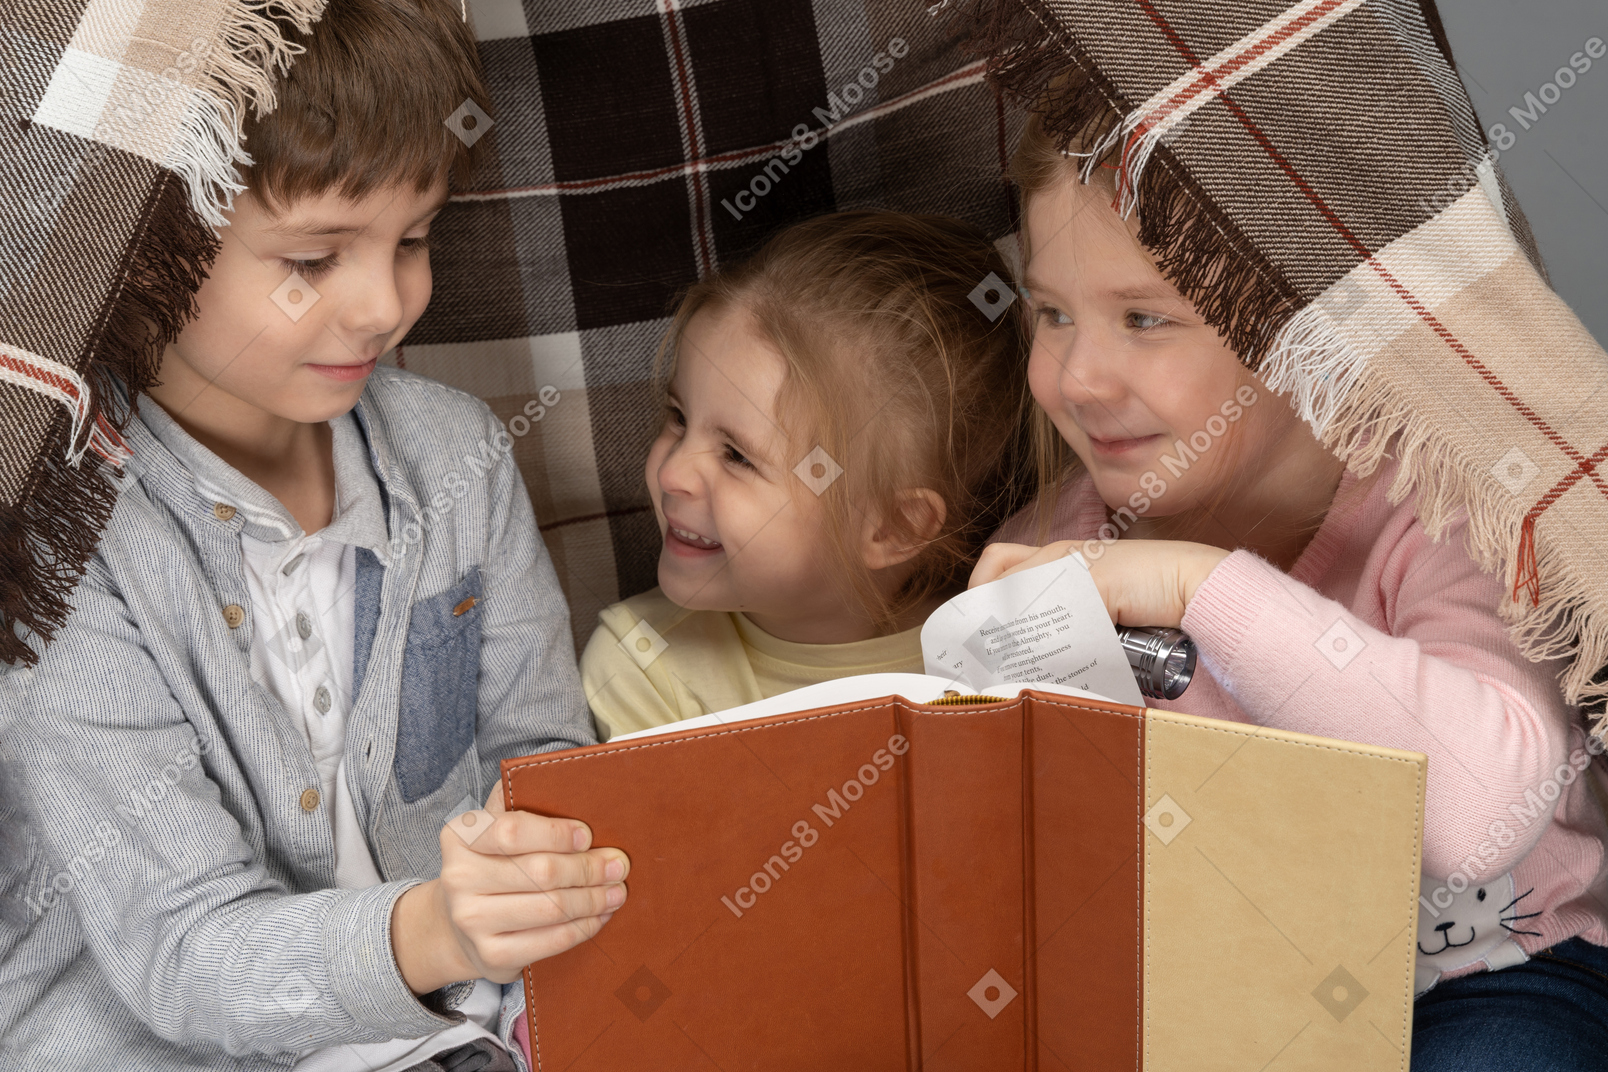 Children reading a book in a hut